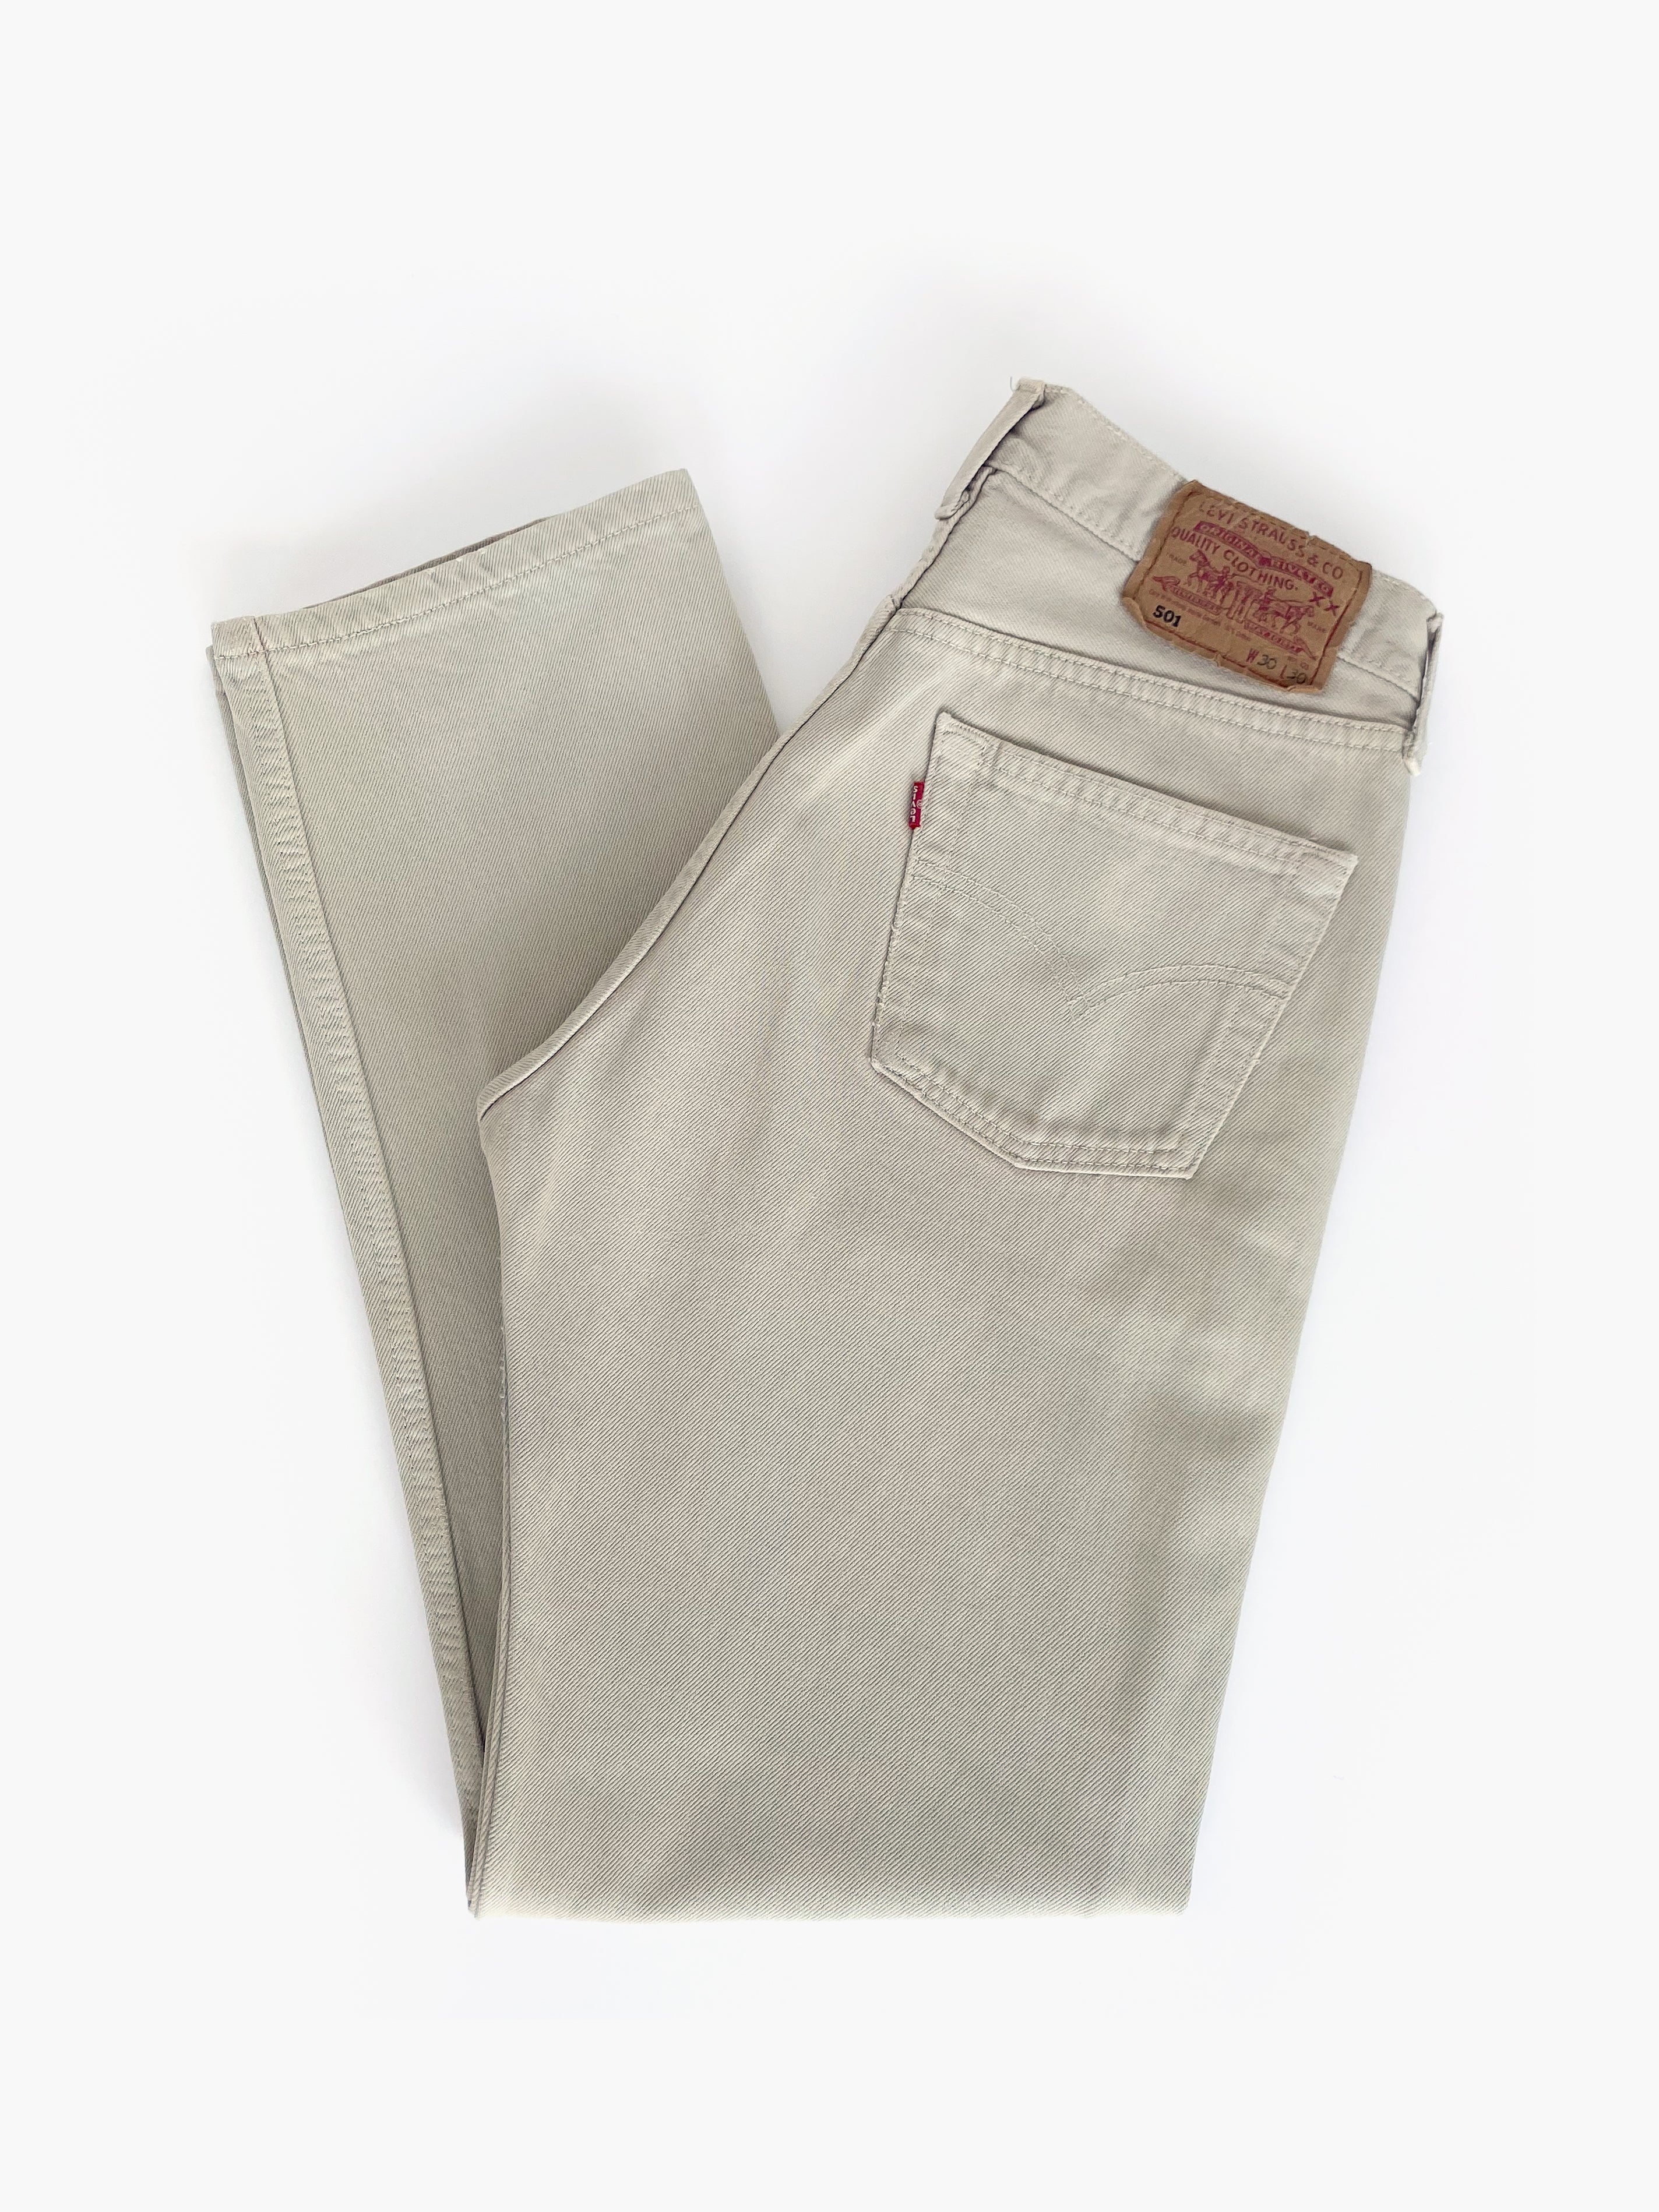 Vintage Levi’s 501 Jeans / W30 L30